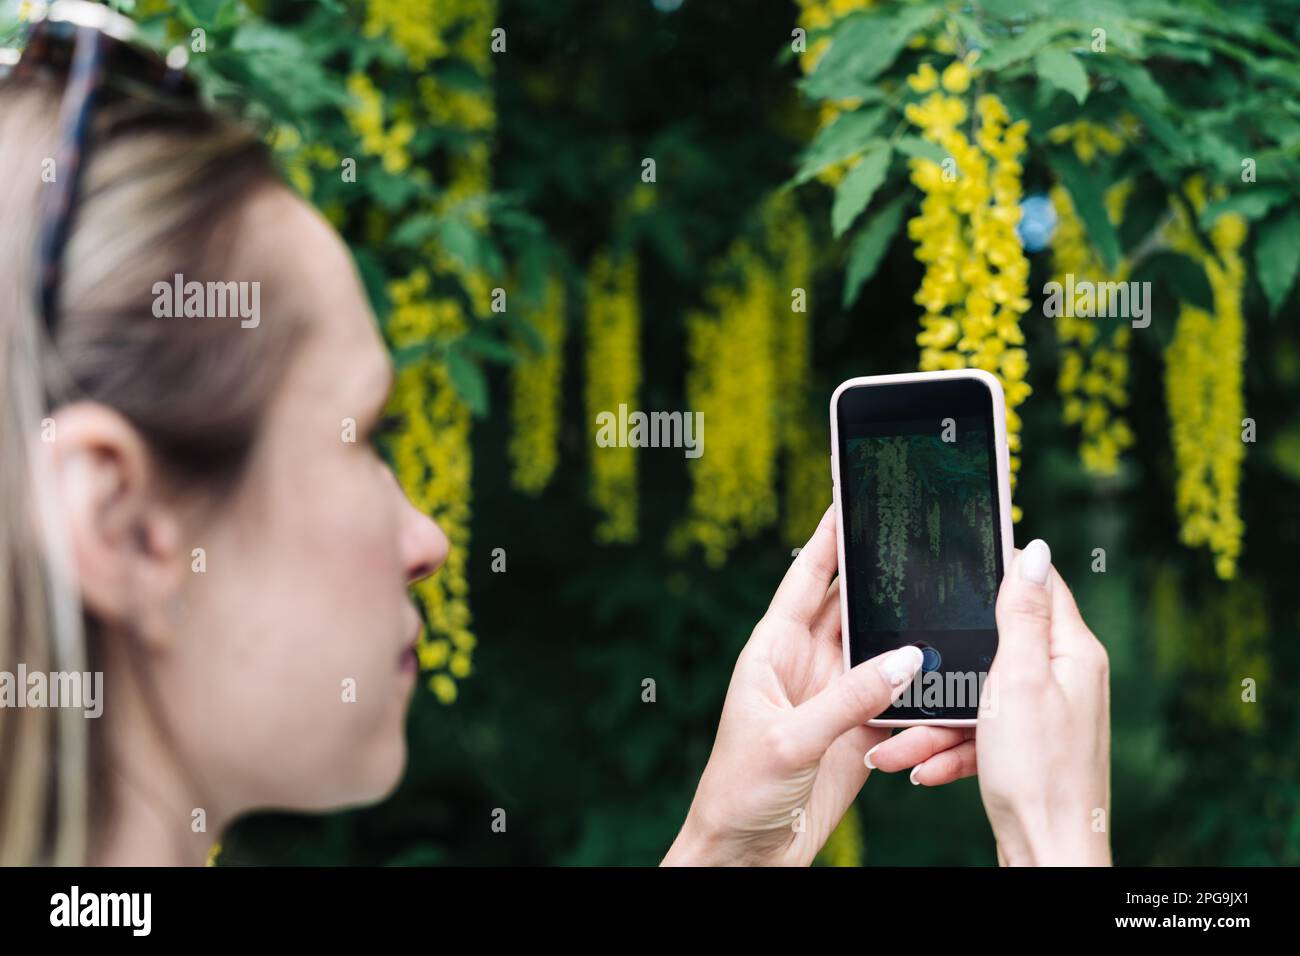 Una donna fotografa sul suo smartphone i fiori gialli della fioritura di Laburnum anagyroides o della pioggia dorata Foto Stock